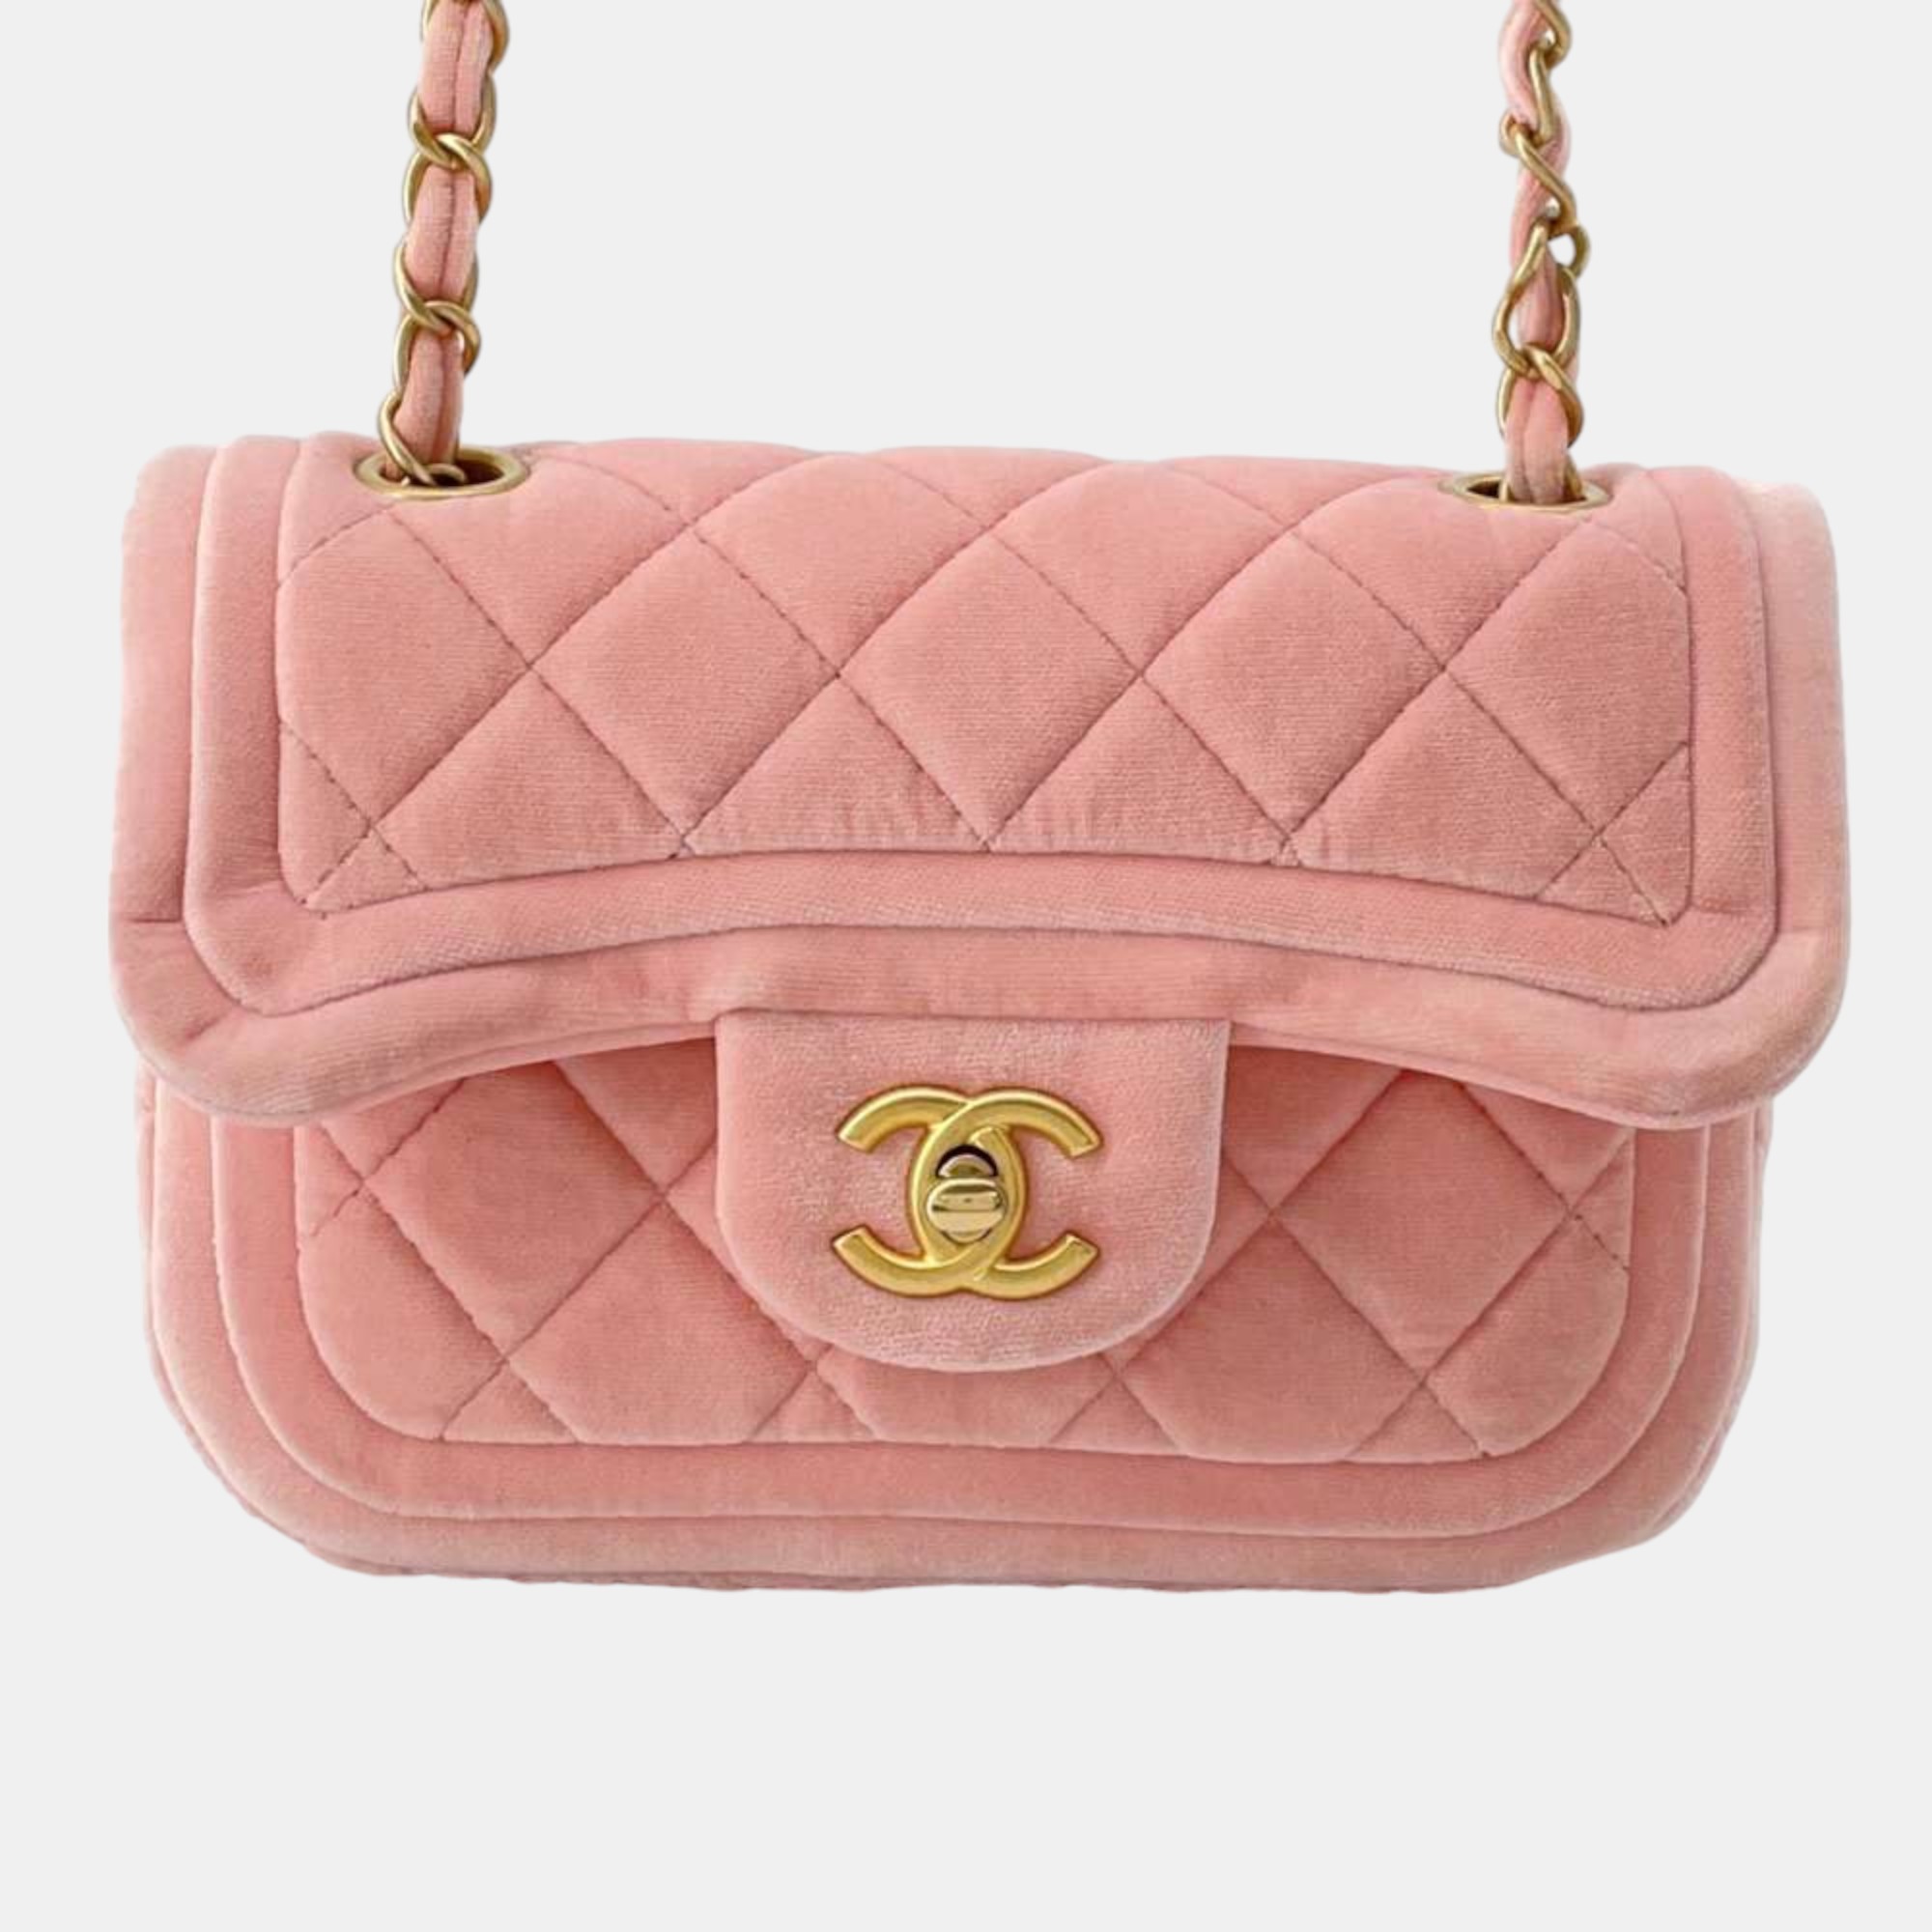 Chanel pink velvet mini flap bag shoulder bag